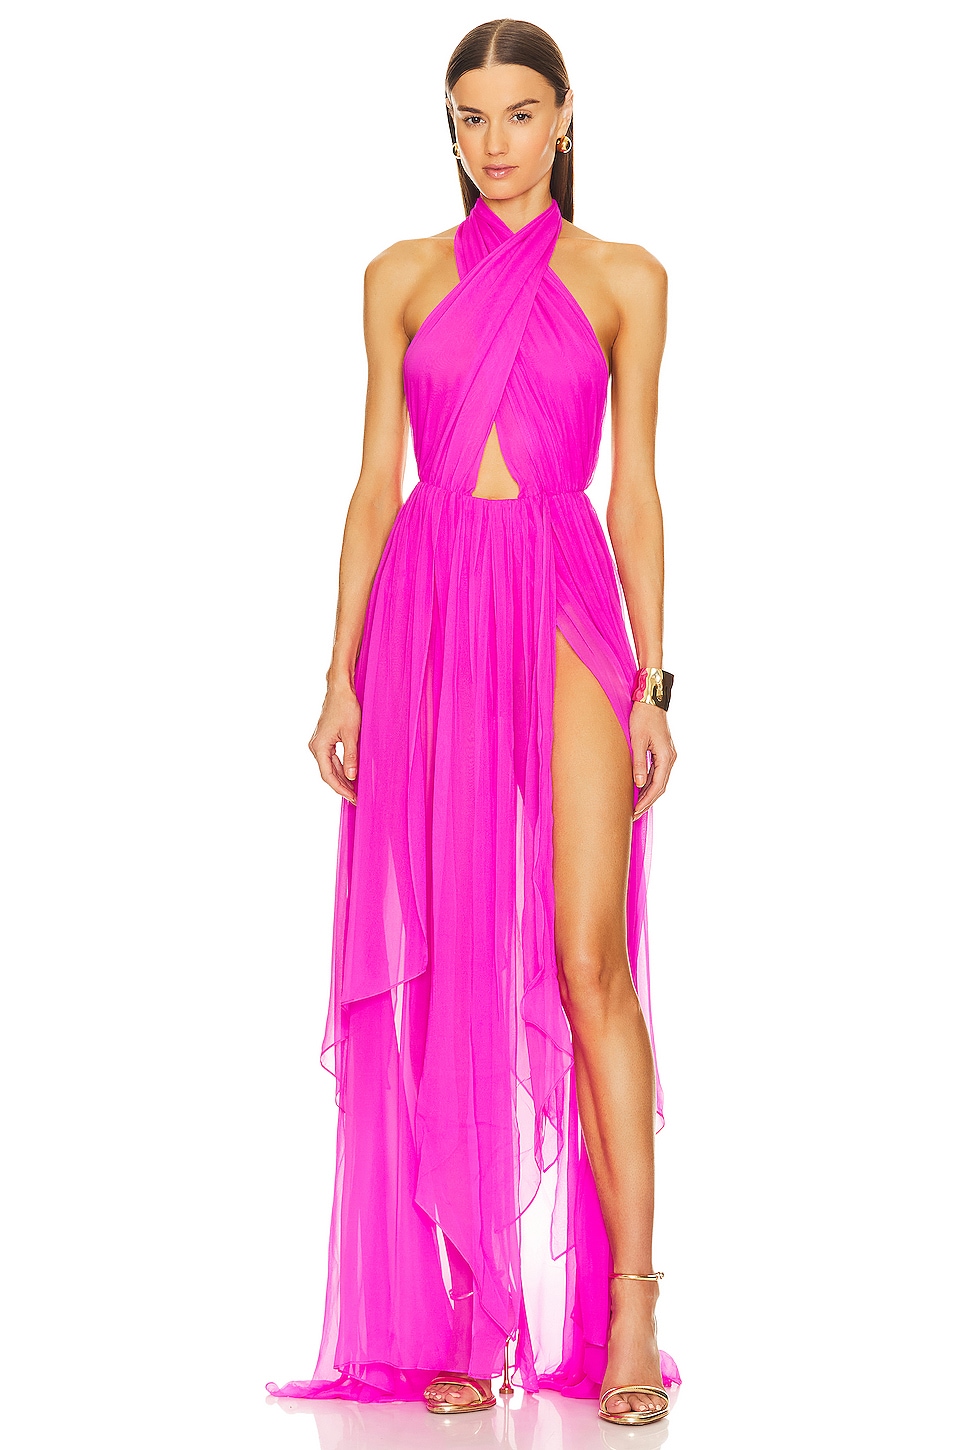 Платье retrofete Ina Silk, цвет Neon Pink платье retrofete tara crochet цвет iridescent pink